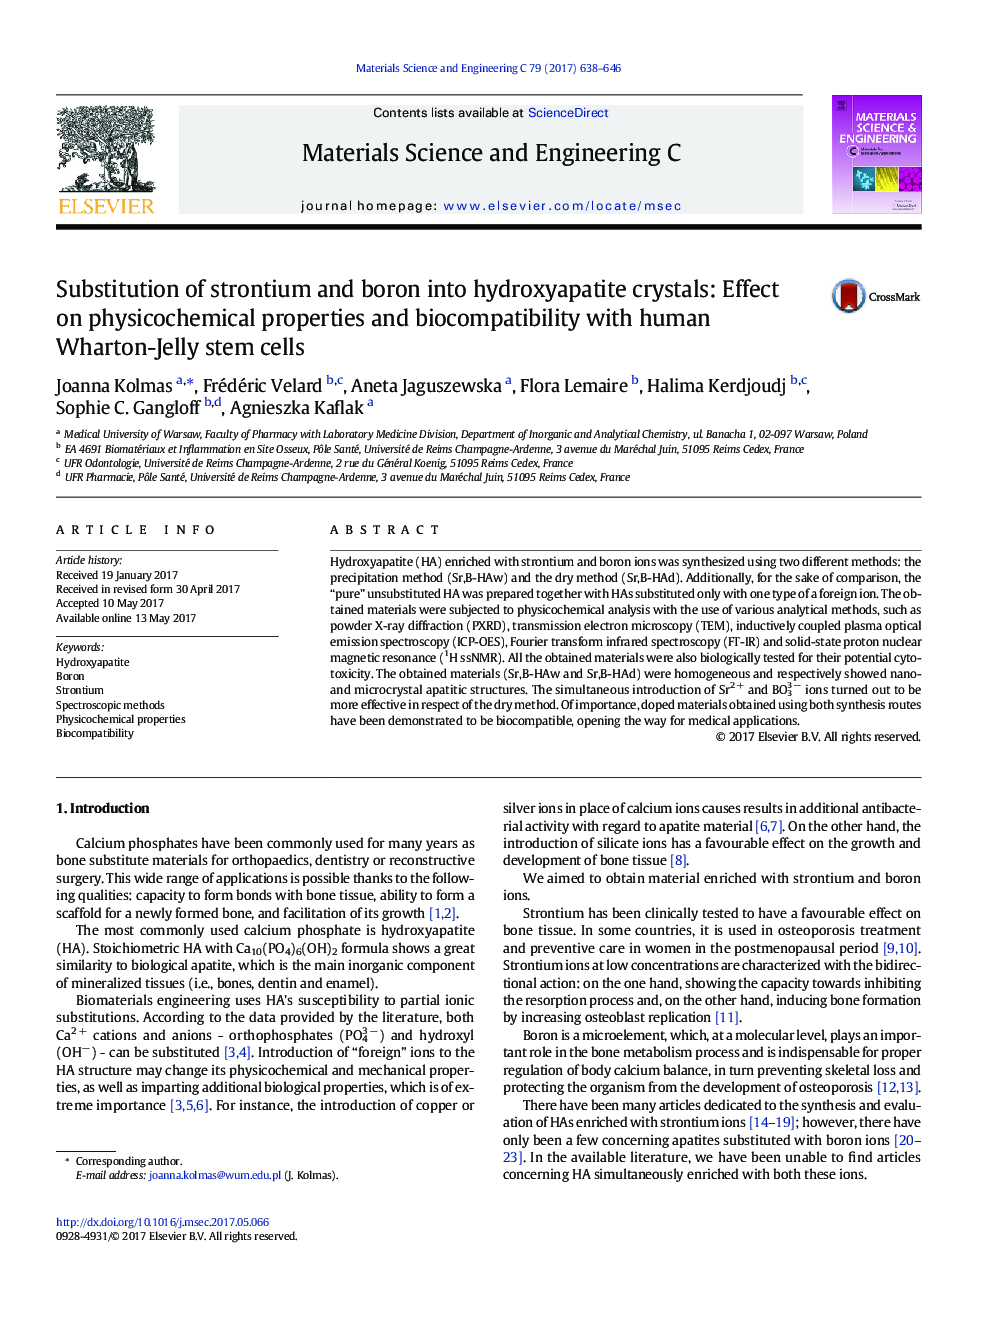 جایگزینی استرانسیم و بور در بلورهای هیدروکسی آپاتیت: تاثیر بر خواص فیزیکوشیمیایی و سازگاری با سلول های بنیادی وارتون ژله انسان 